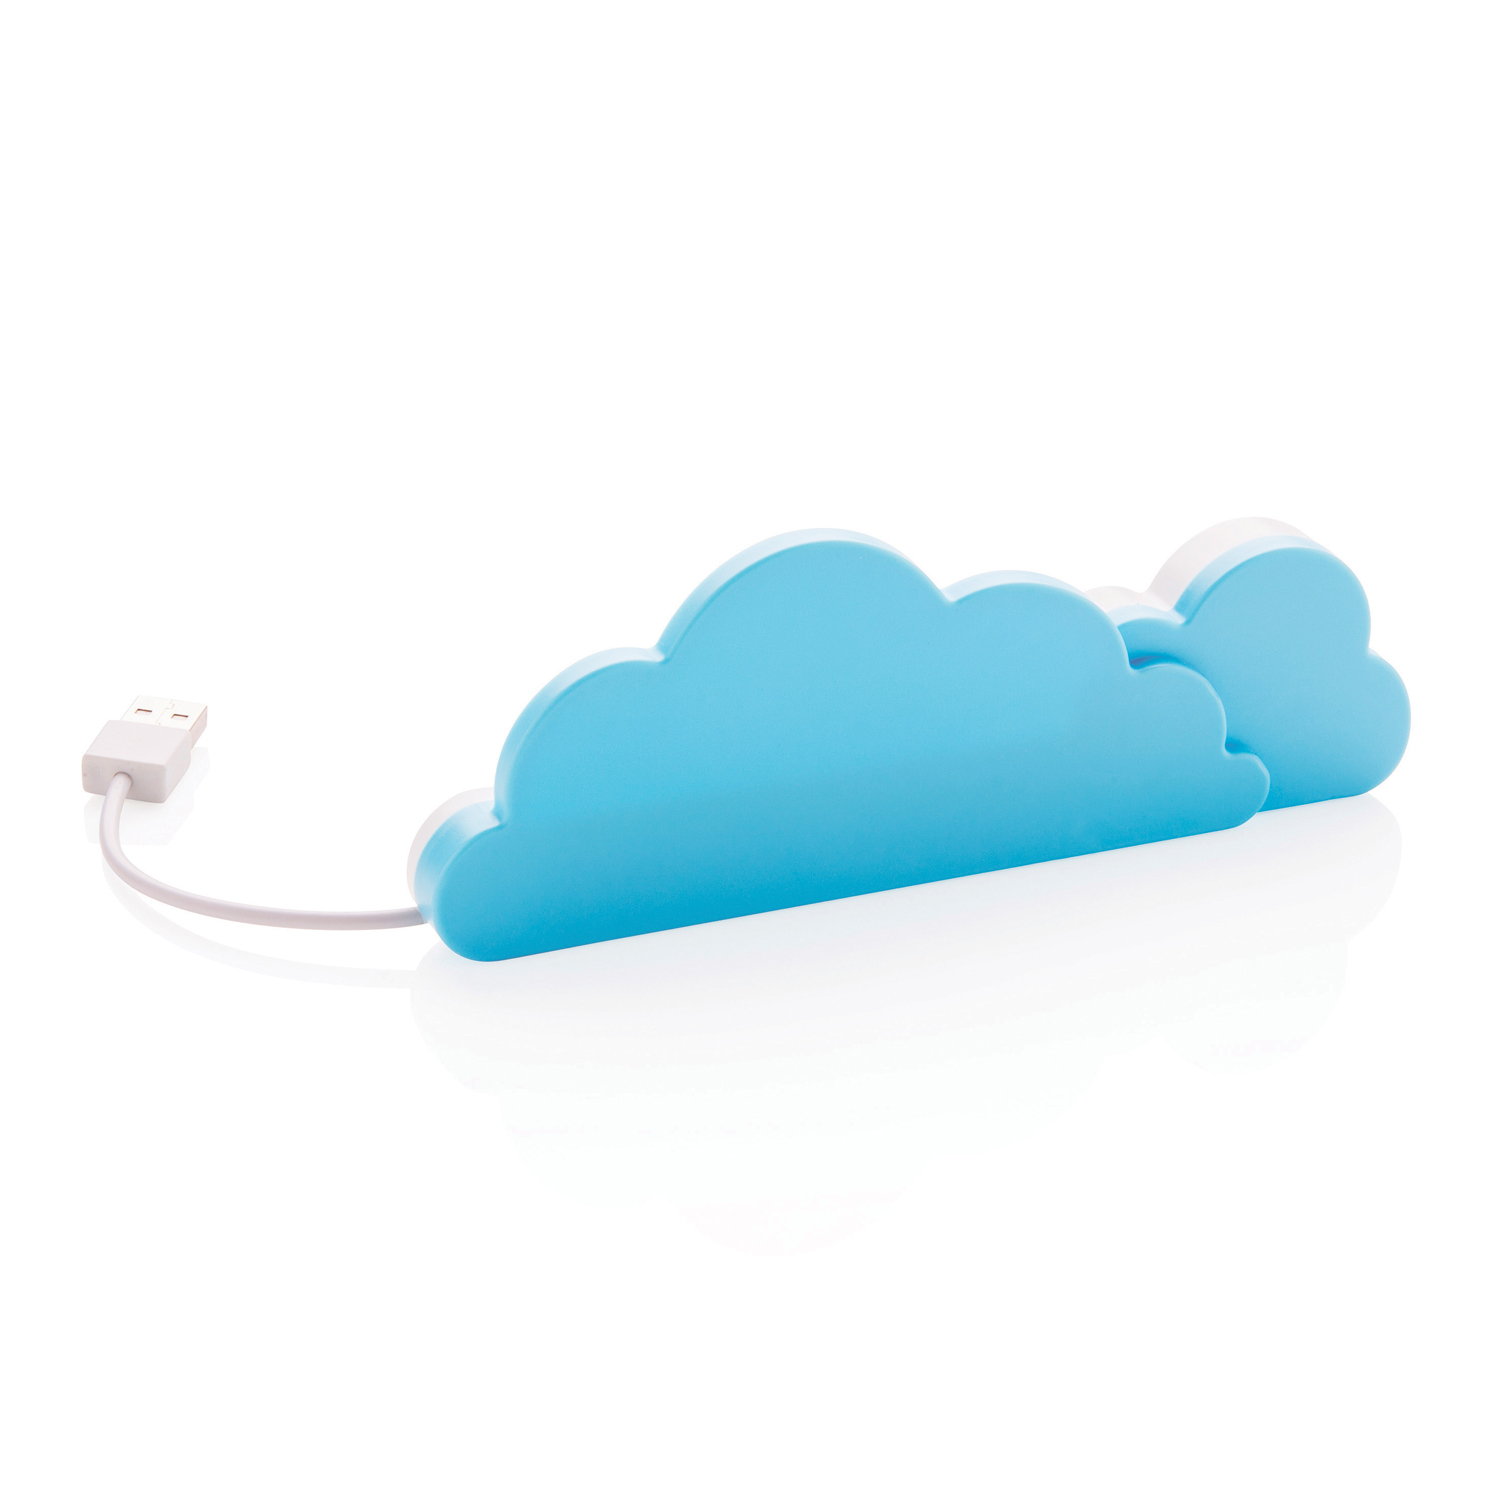 USB-хаб Cloud заказать в Москве